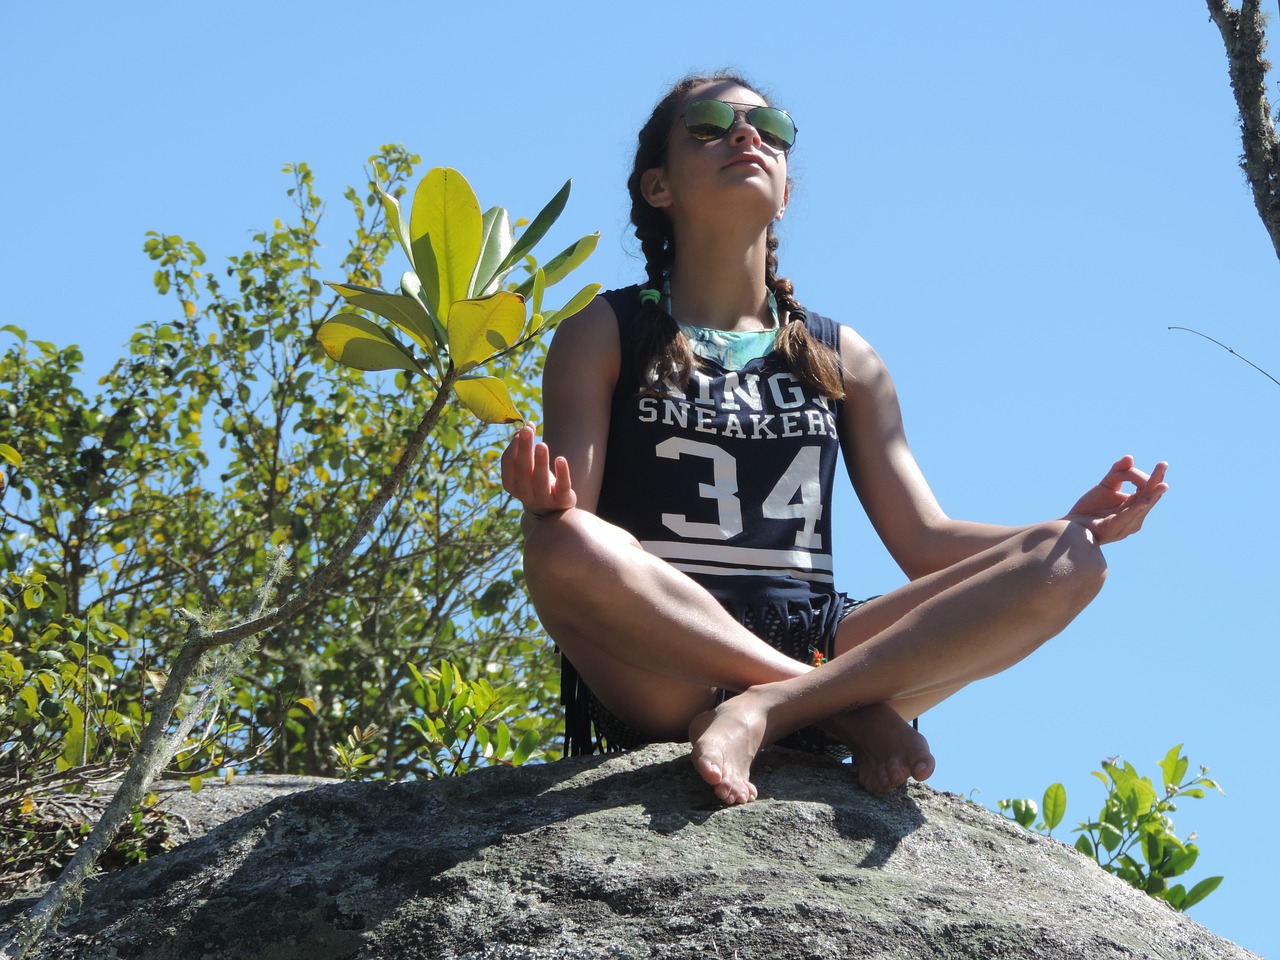 Pozycja jogi parvatasana. Czy joga może relaksować?